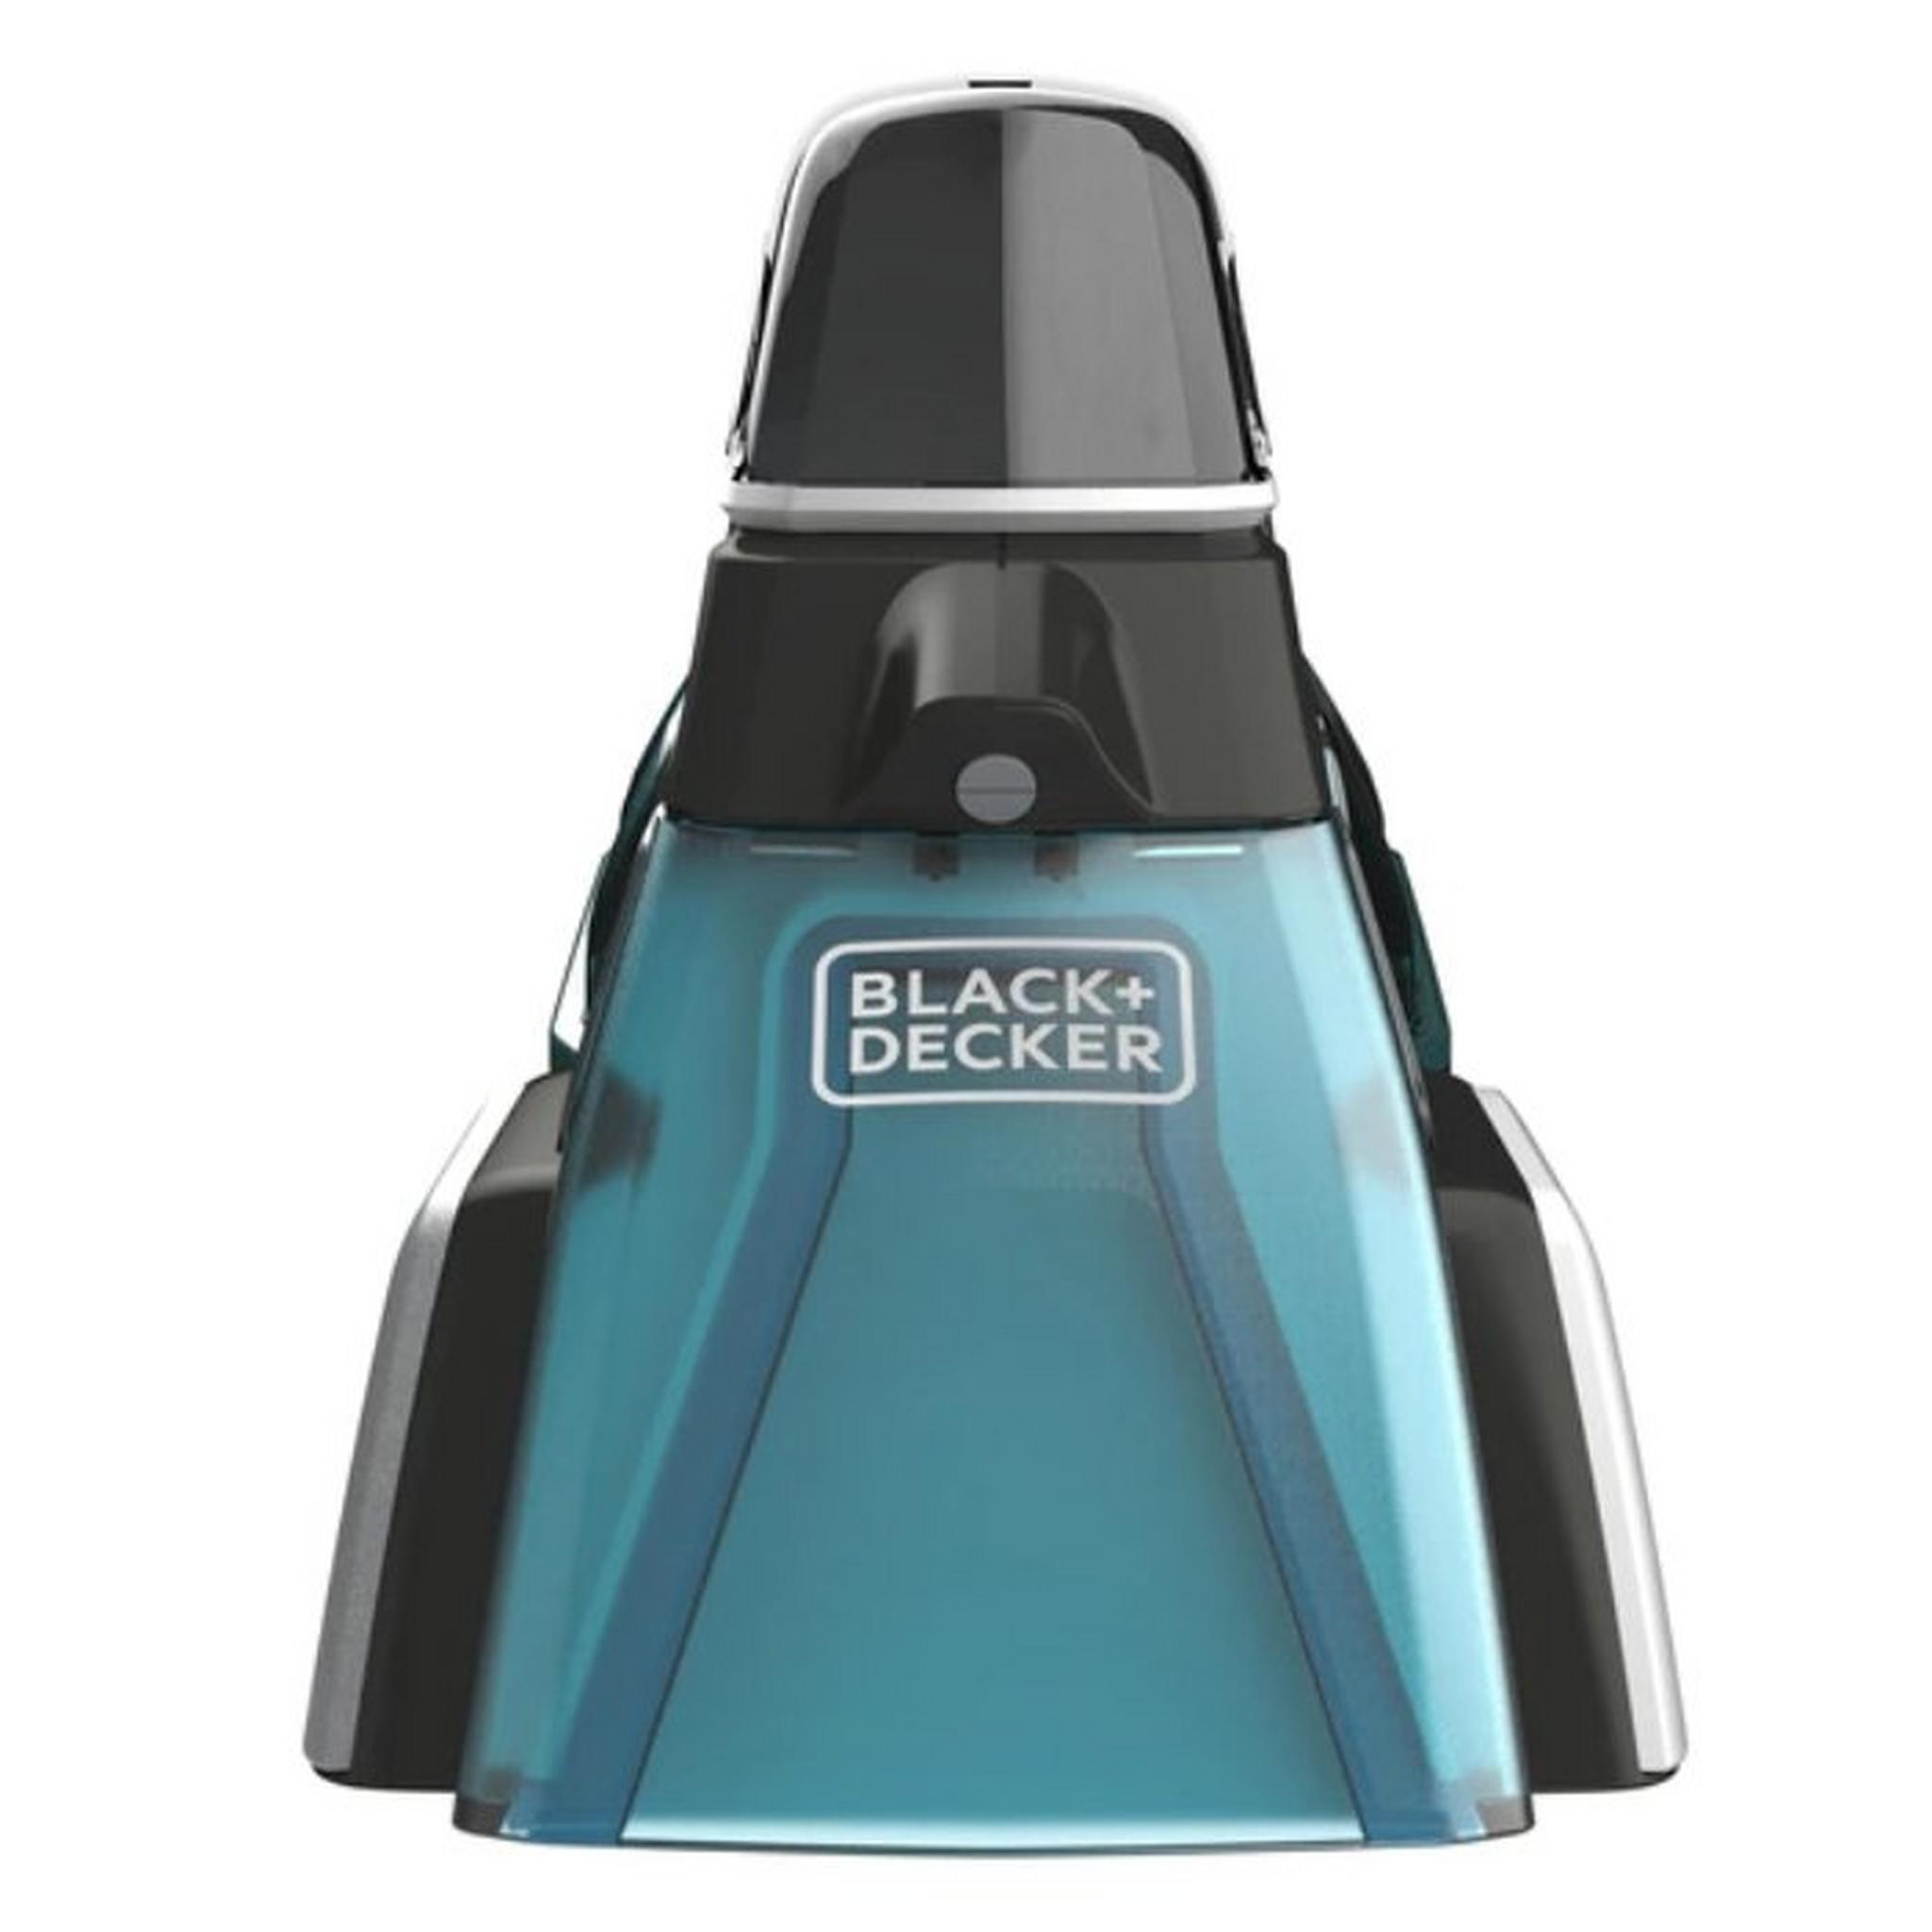 Black+Decker 12V Spill Buster Powered Spot Cleaner, 0.25 Liters, BHSB320JP-GB - Black